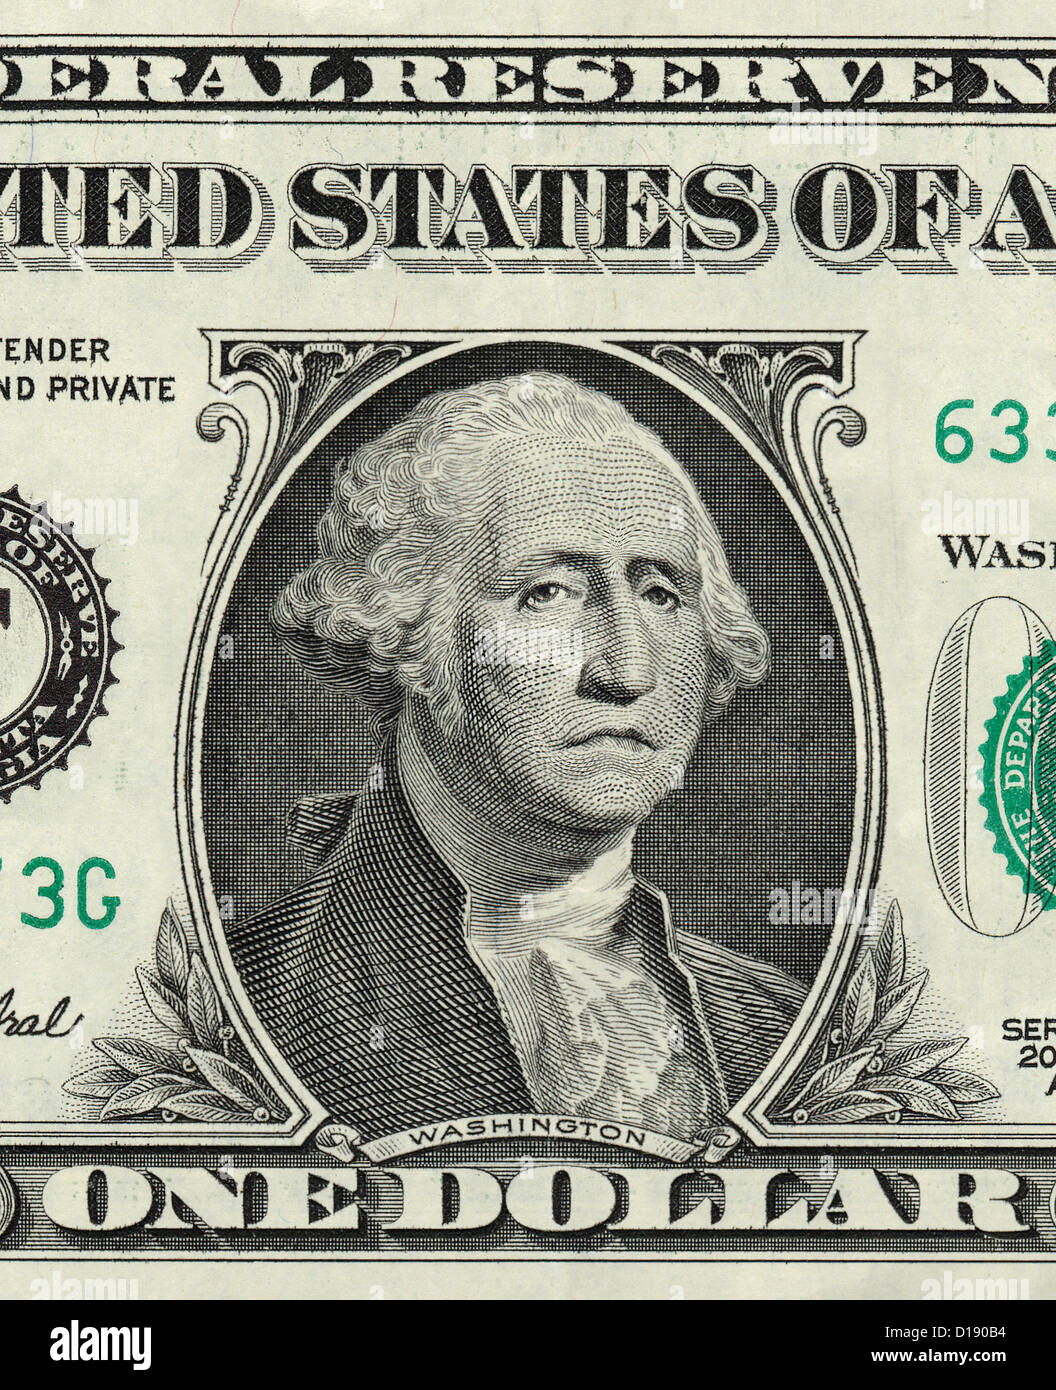 George Washington On One Us Dollar With Sad Expression Stock Photo Alamy